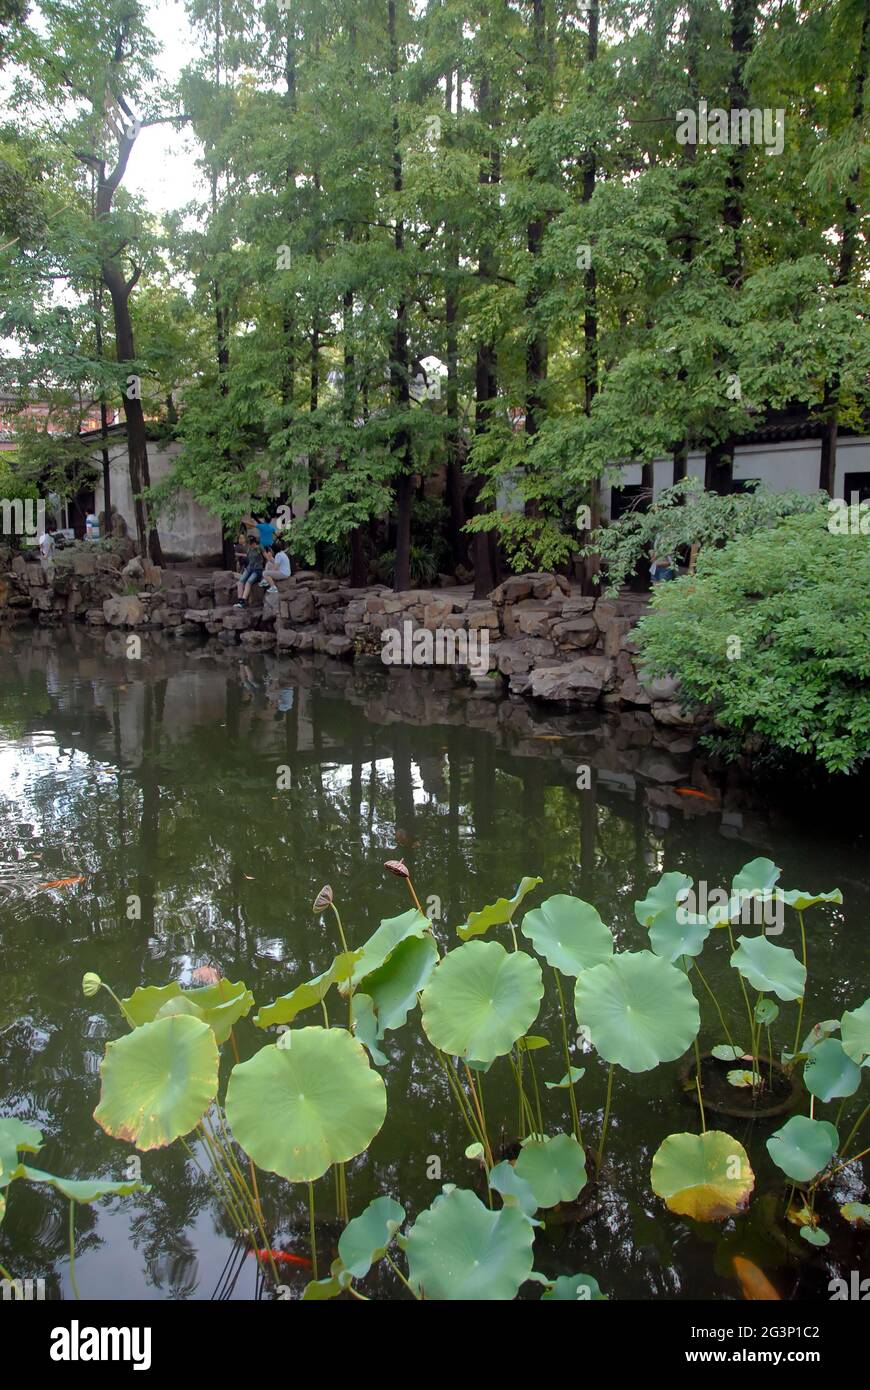 Yu Yuan Garten in der Altstadt von Shanghai, China. Ein traditioneller chinesischer Garten mit Bäumen, Felsen und Wasser. Blick auf den See mit unkenntlichen Menschen. Stockfoto